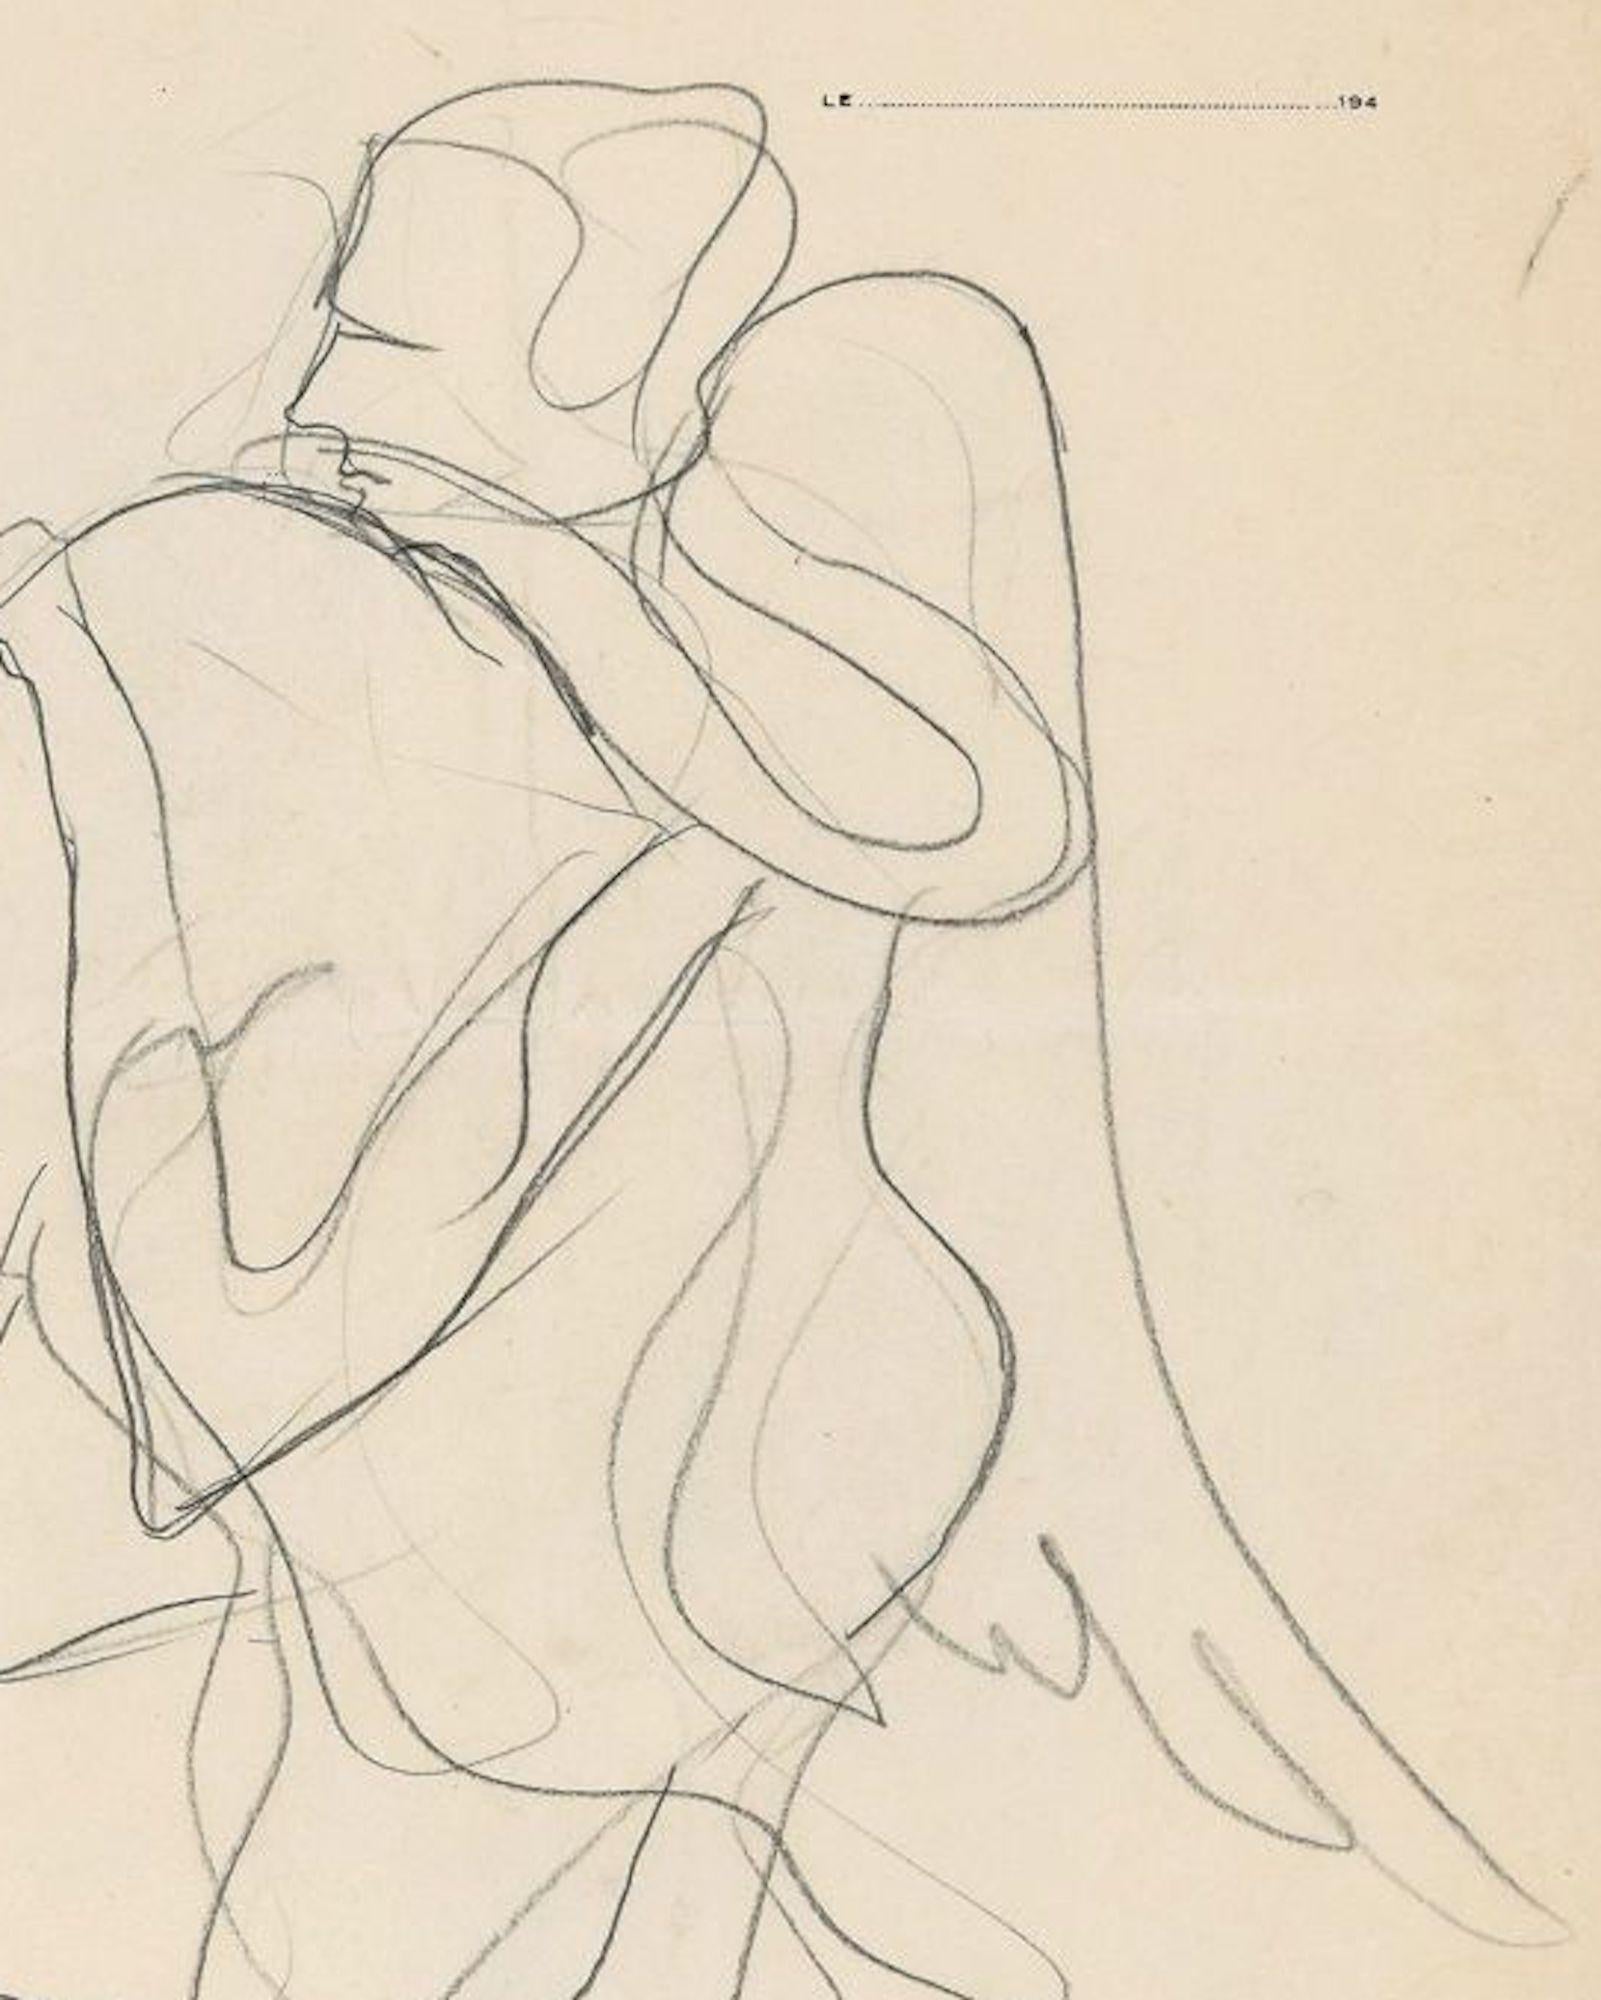 Winged Figure - Pencil Drawing by J. Bodley - 1940 - Art by Josselin Bodley